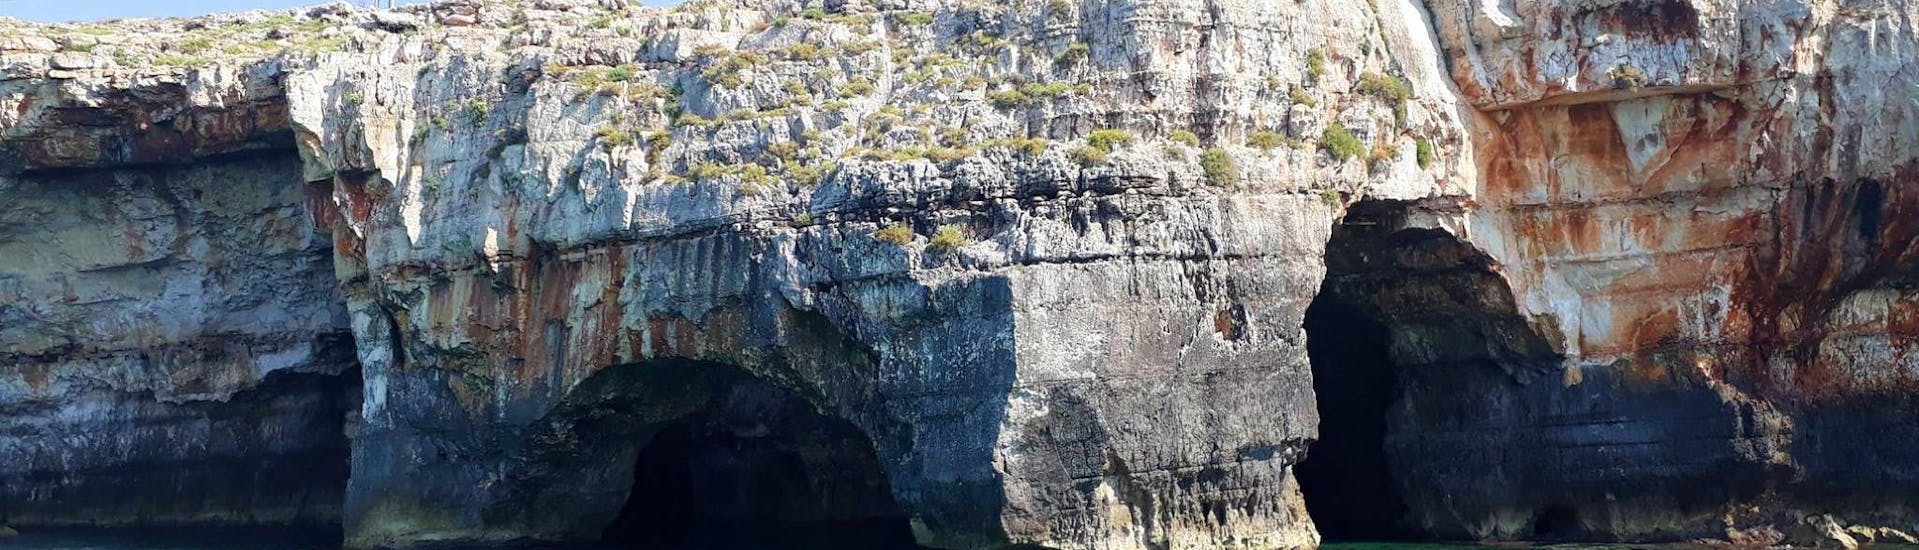 Picture of the Grotta delle Tre Porte taken during a RIB boat trip with Rosa dei Venti Escursioni.